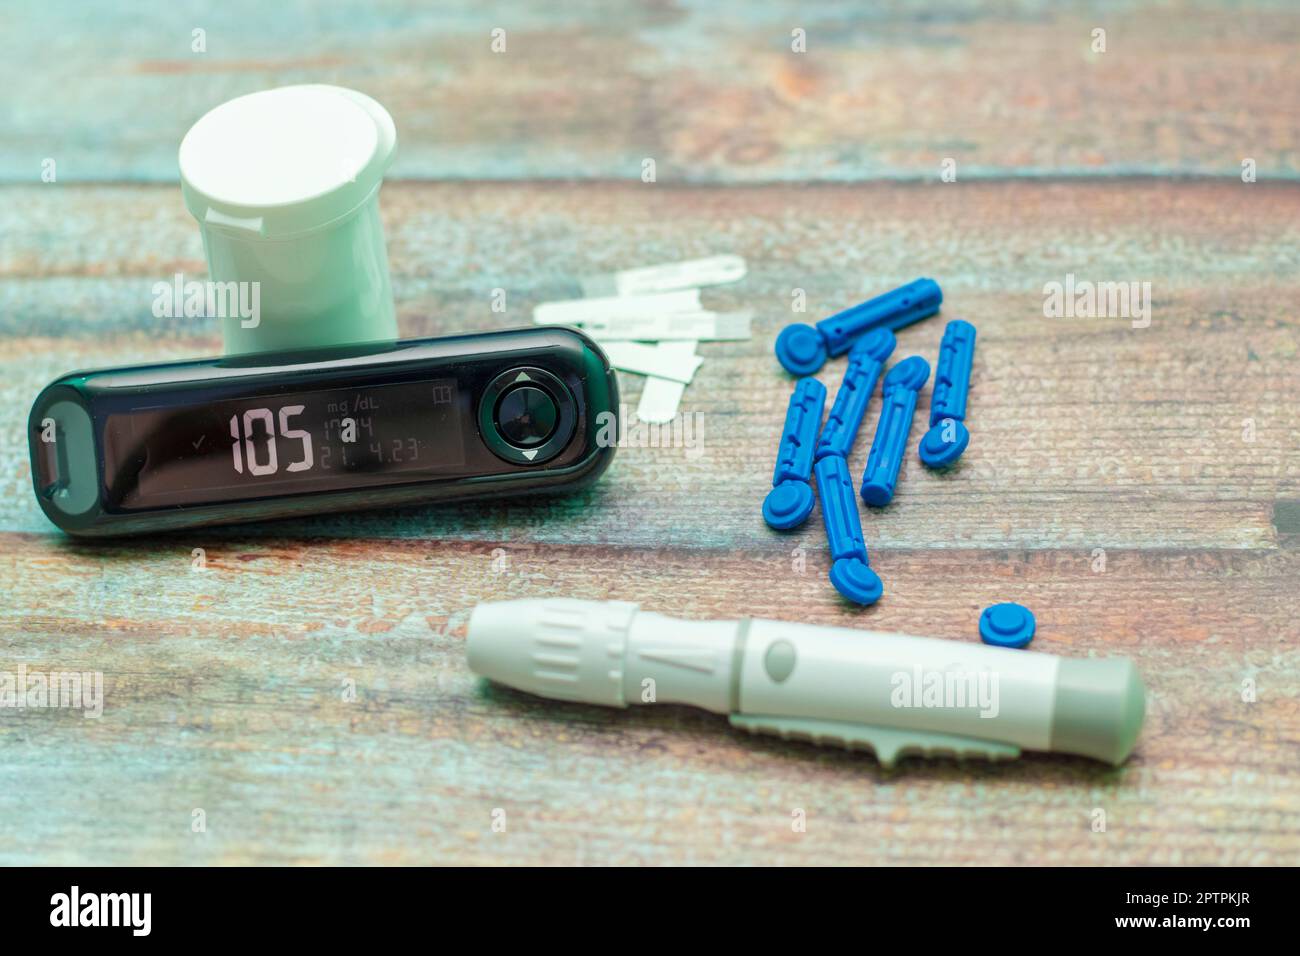 un patient diabétique mesurant le taux de sucre dans le sang à l'aide d'un dispositif. Banque D'Images